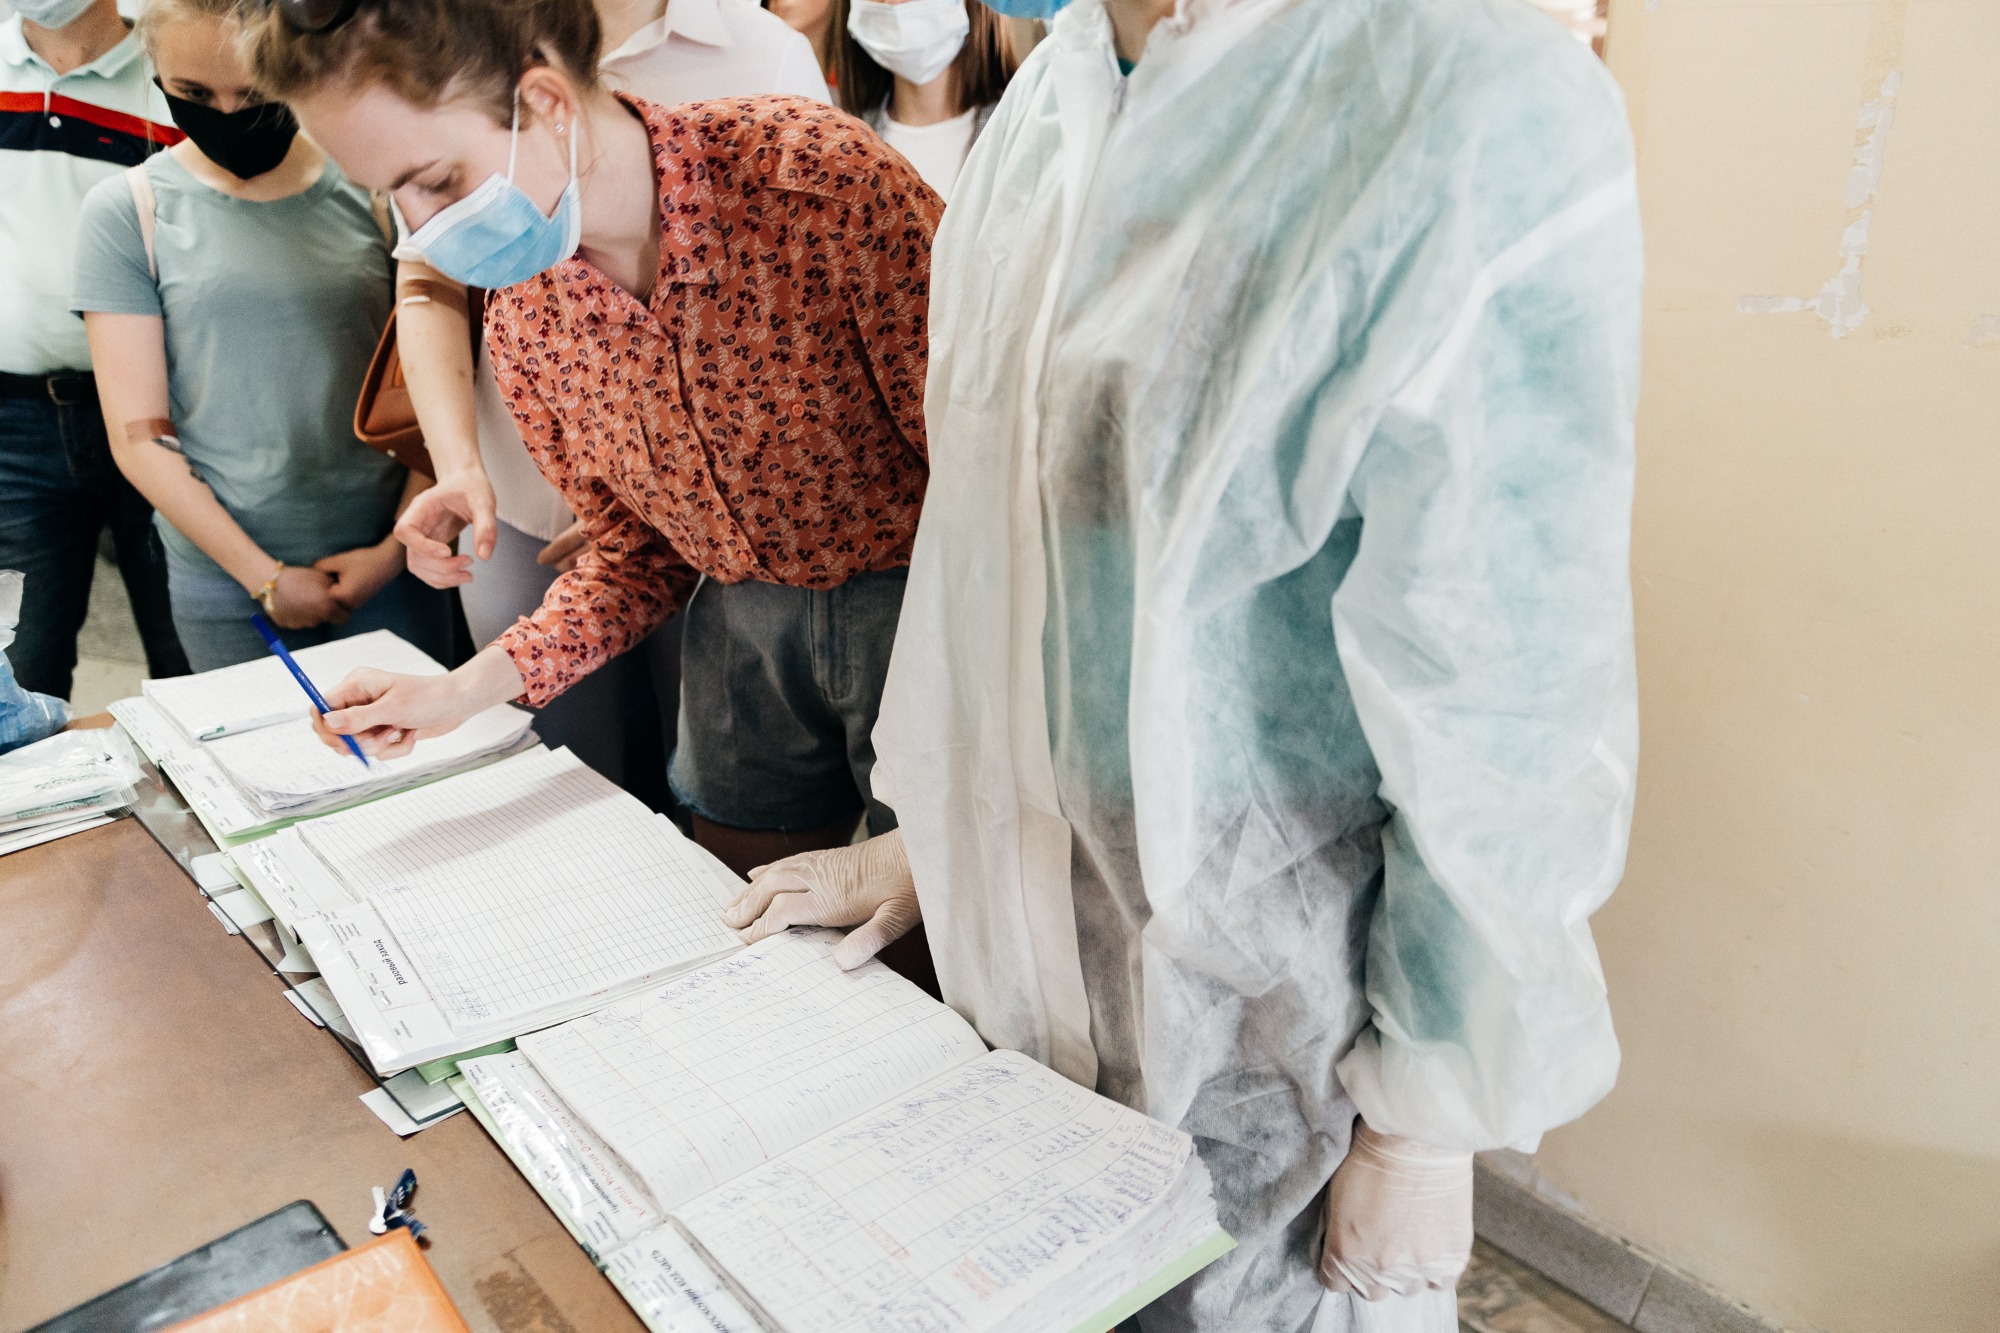 Учителя и медики при трудоустройстве в Томской области по программе переселения соотечественников получат по 100 тысяч рублей